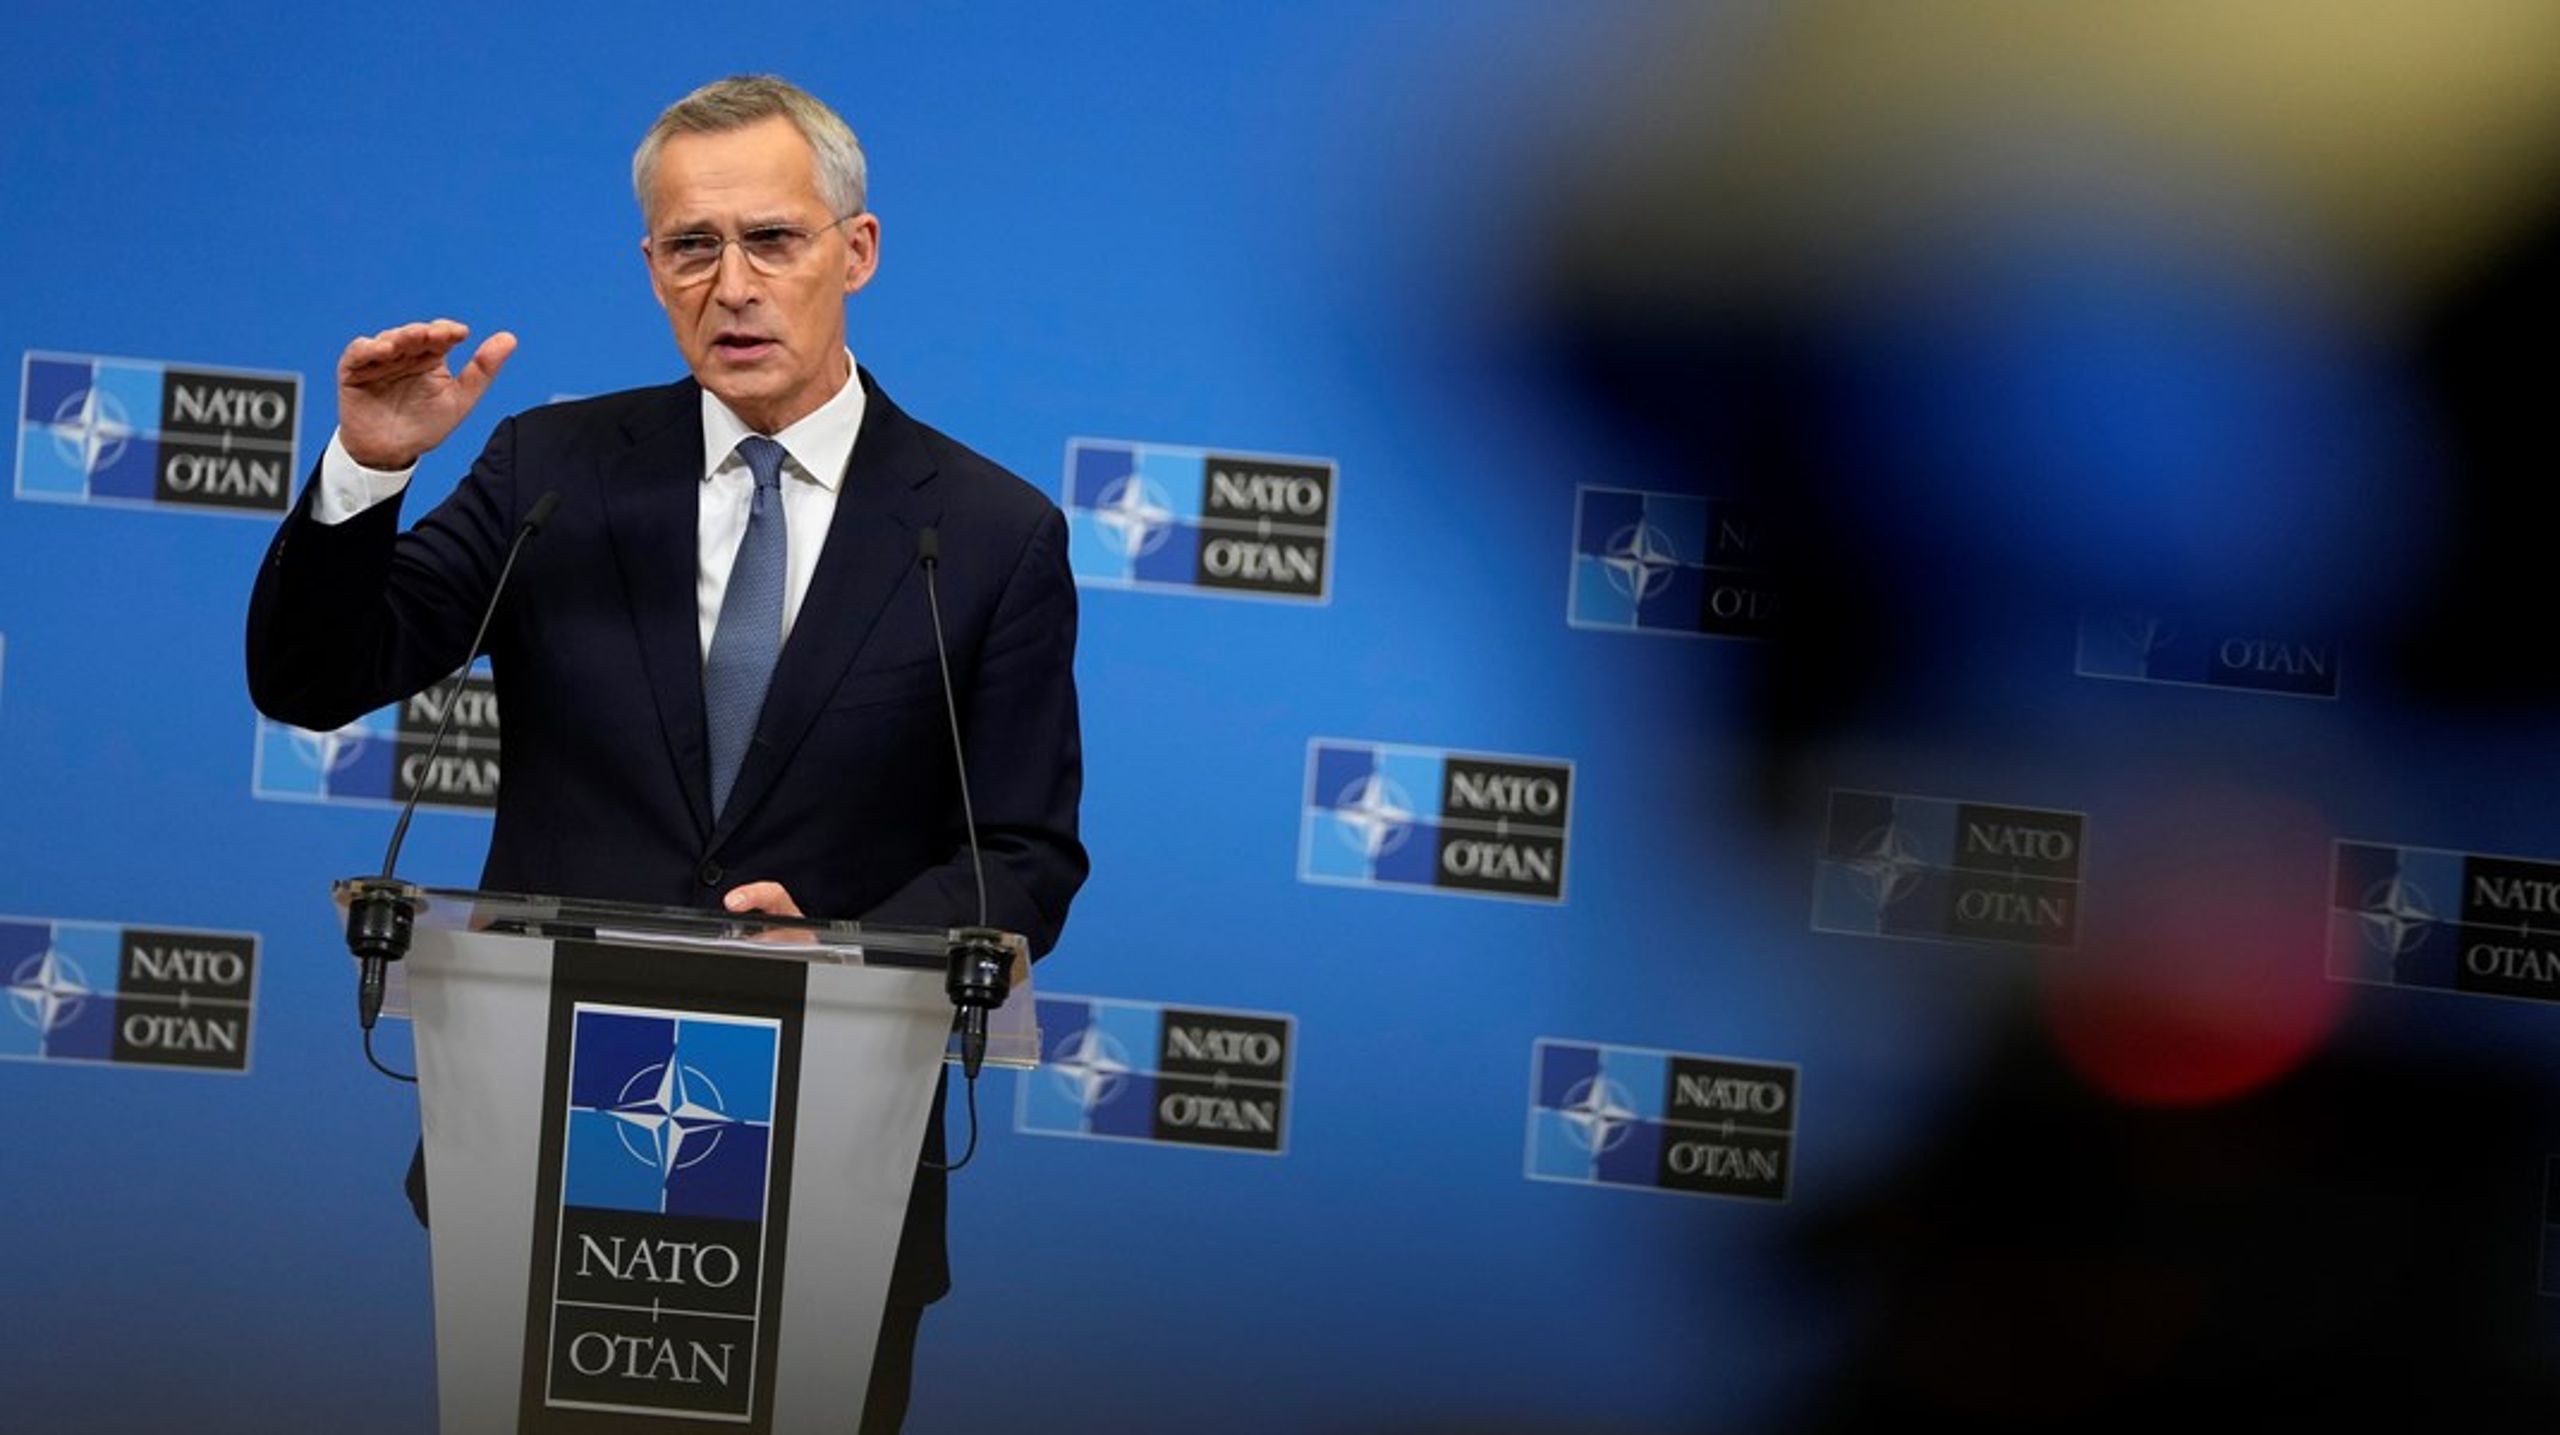 Det blir travelt for Natos utenriksministre når de møtes i Brussel denne uken. Natos generalsekretær Jens Stoltenberg møtte pressen i forkant av møtet.